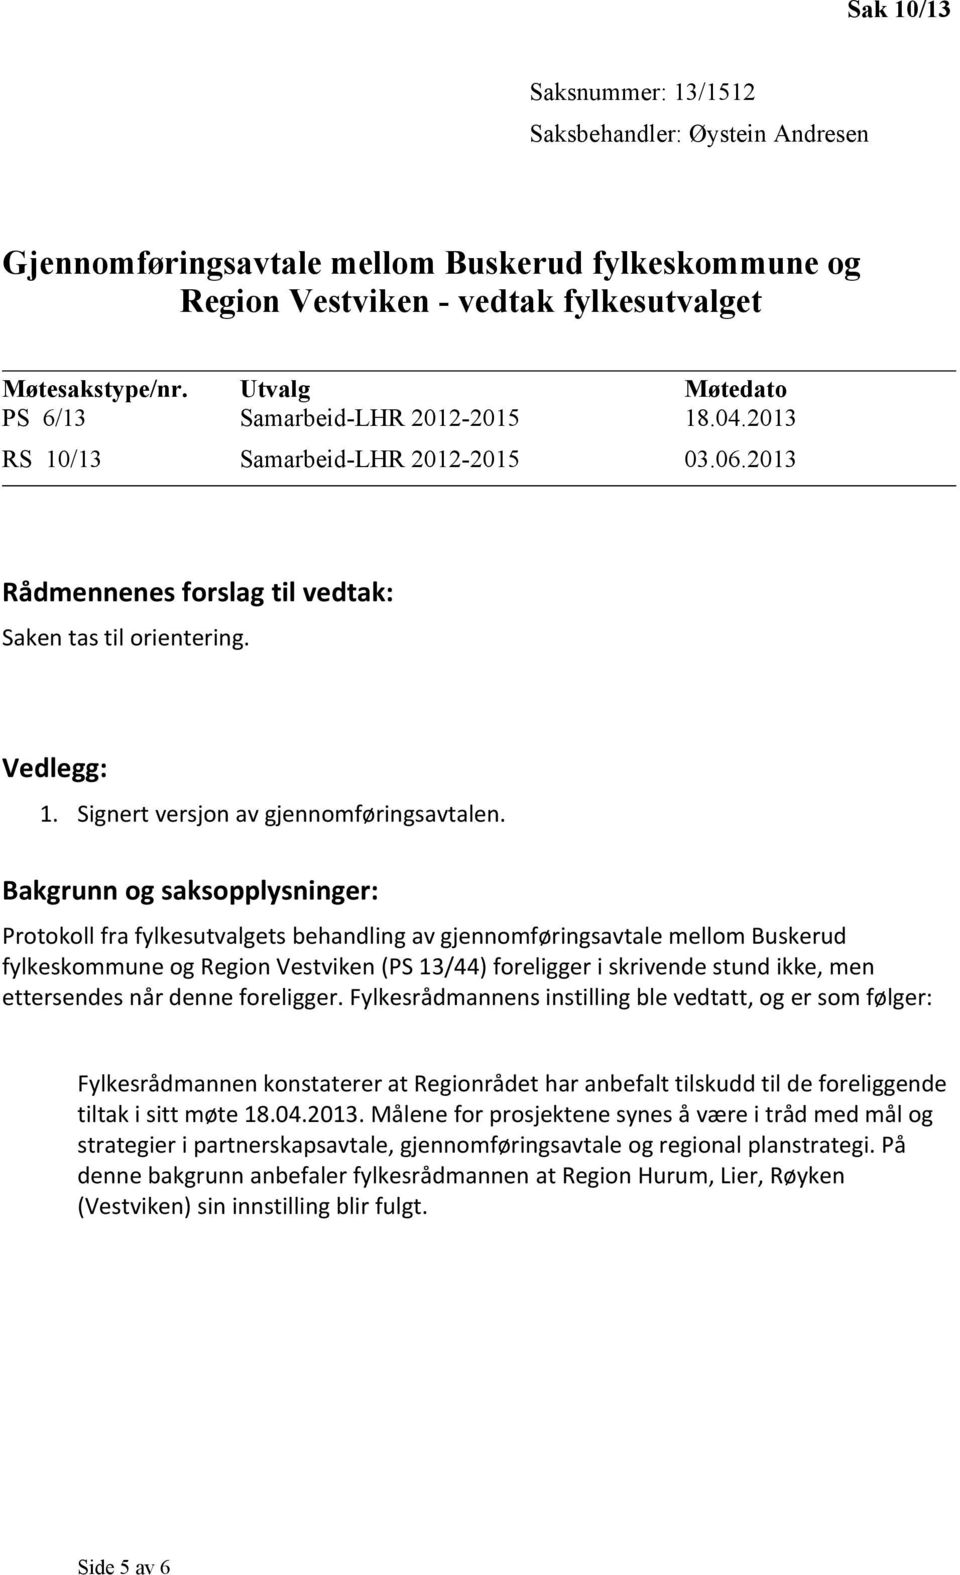 Bakgrunn og saksopplysninger: Protokoll fra fylkesutvalgets behandling av gjennomføringsavtale mellom Buskerud fylkeskommune og Region Vestviken (PS 13/44) foreligger i skrivende stund ikke, men